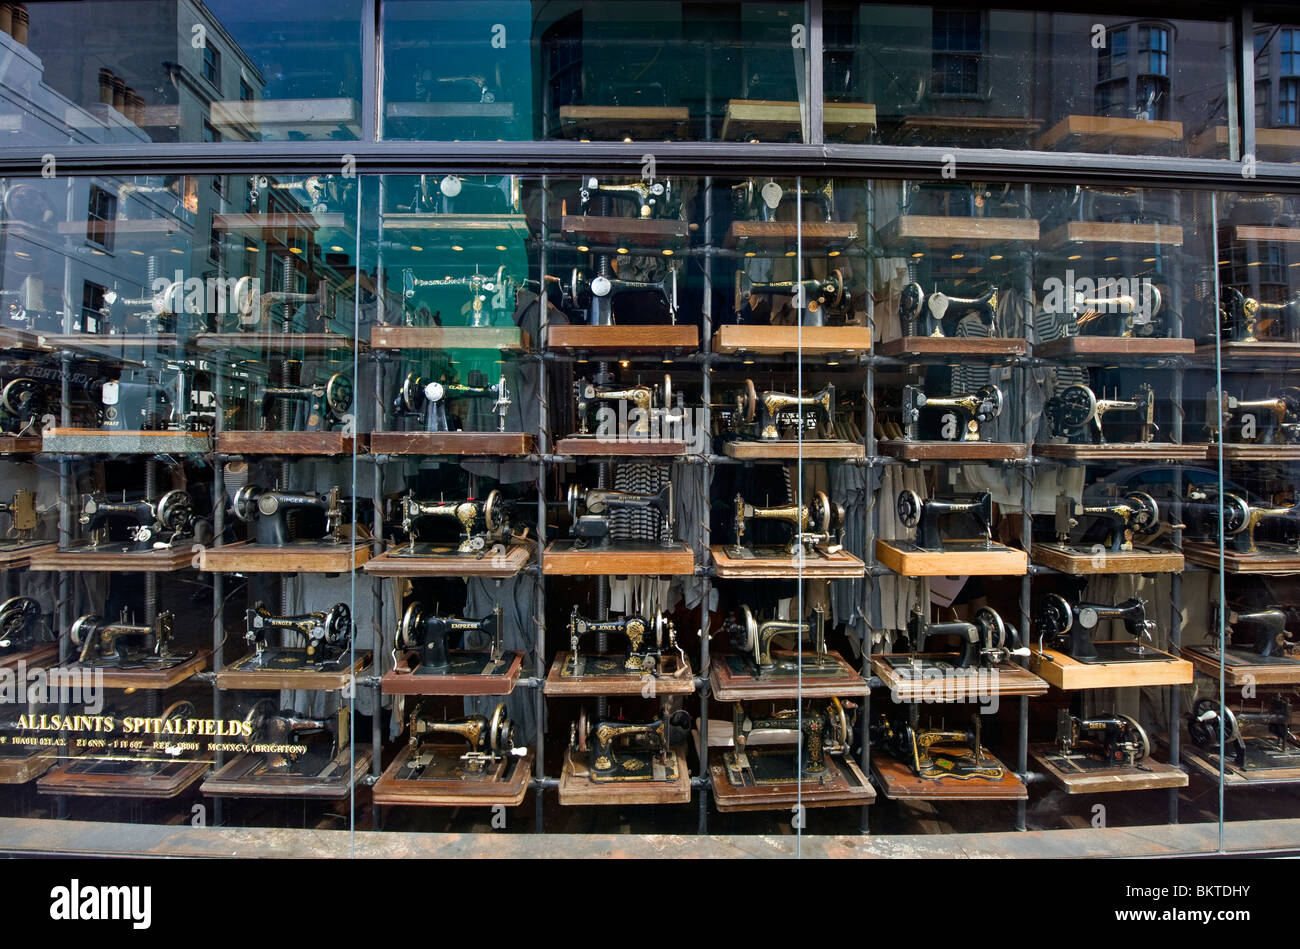 Une vitrine afficher plein de machines à coudre Singer à l'ancienne, un magasin de vêtements de mode à Brighton, Sussex, UK Banque D'Images